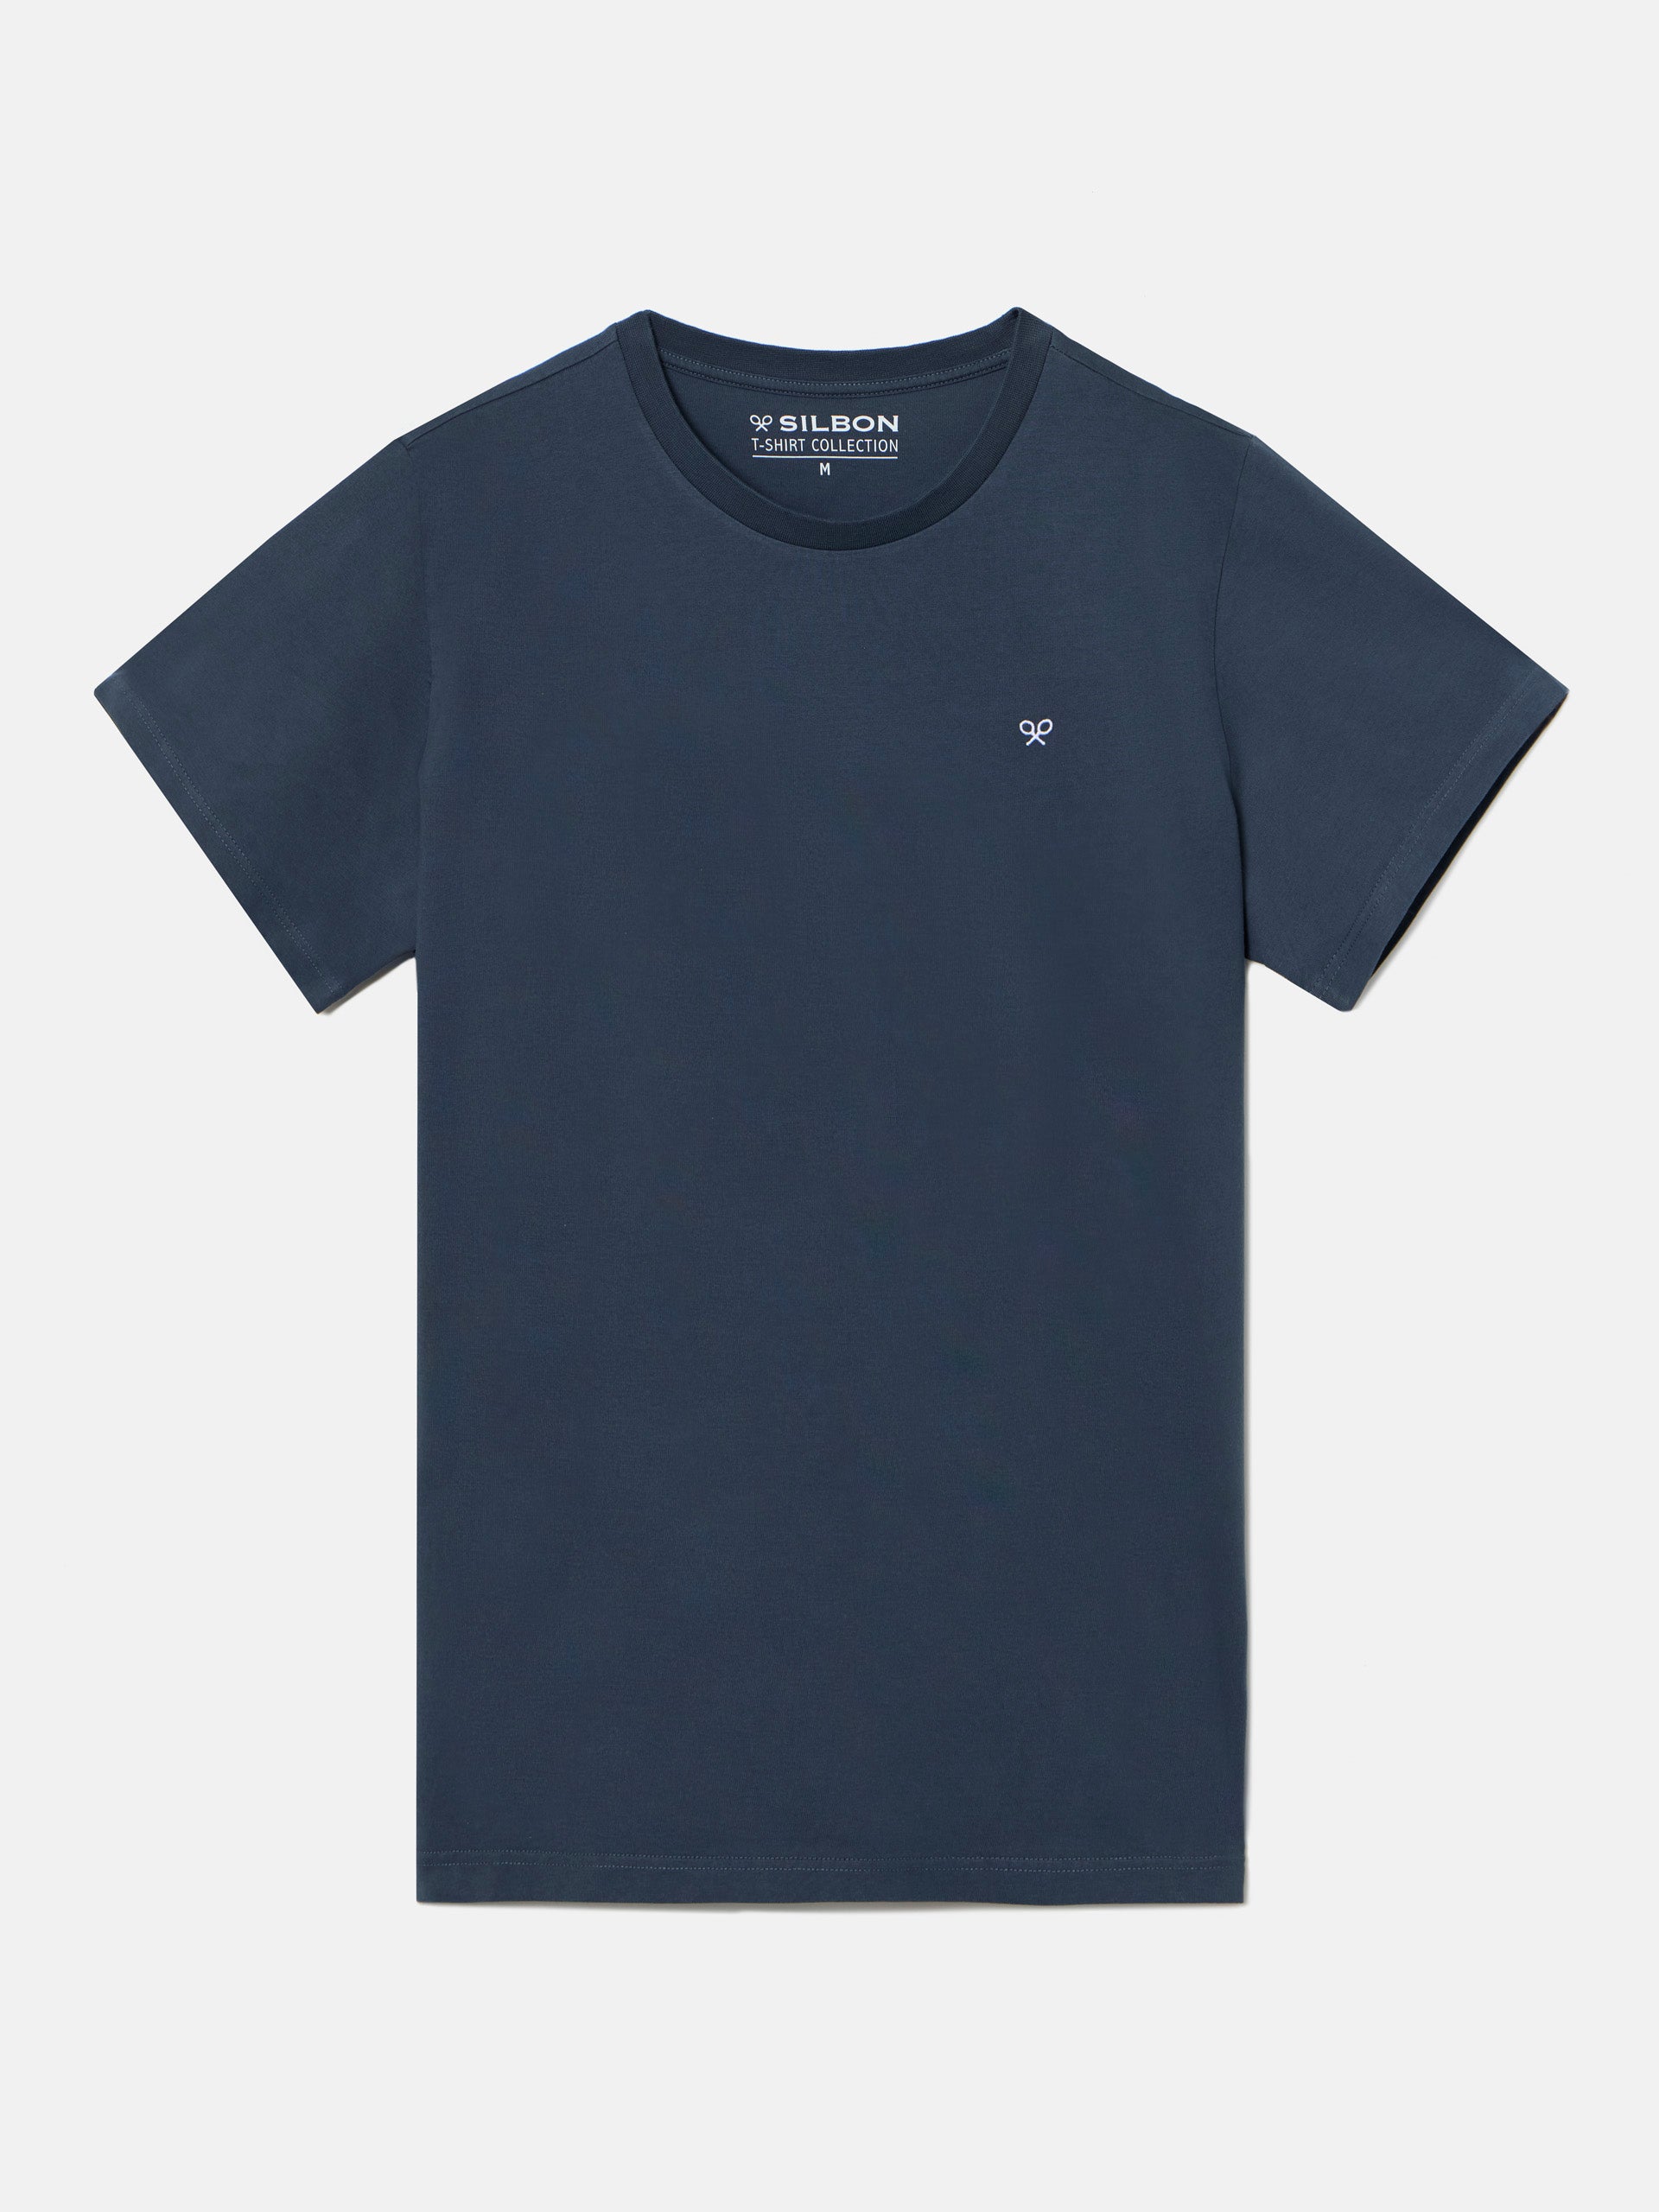 Camiseta marine azul marino